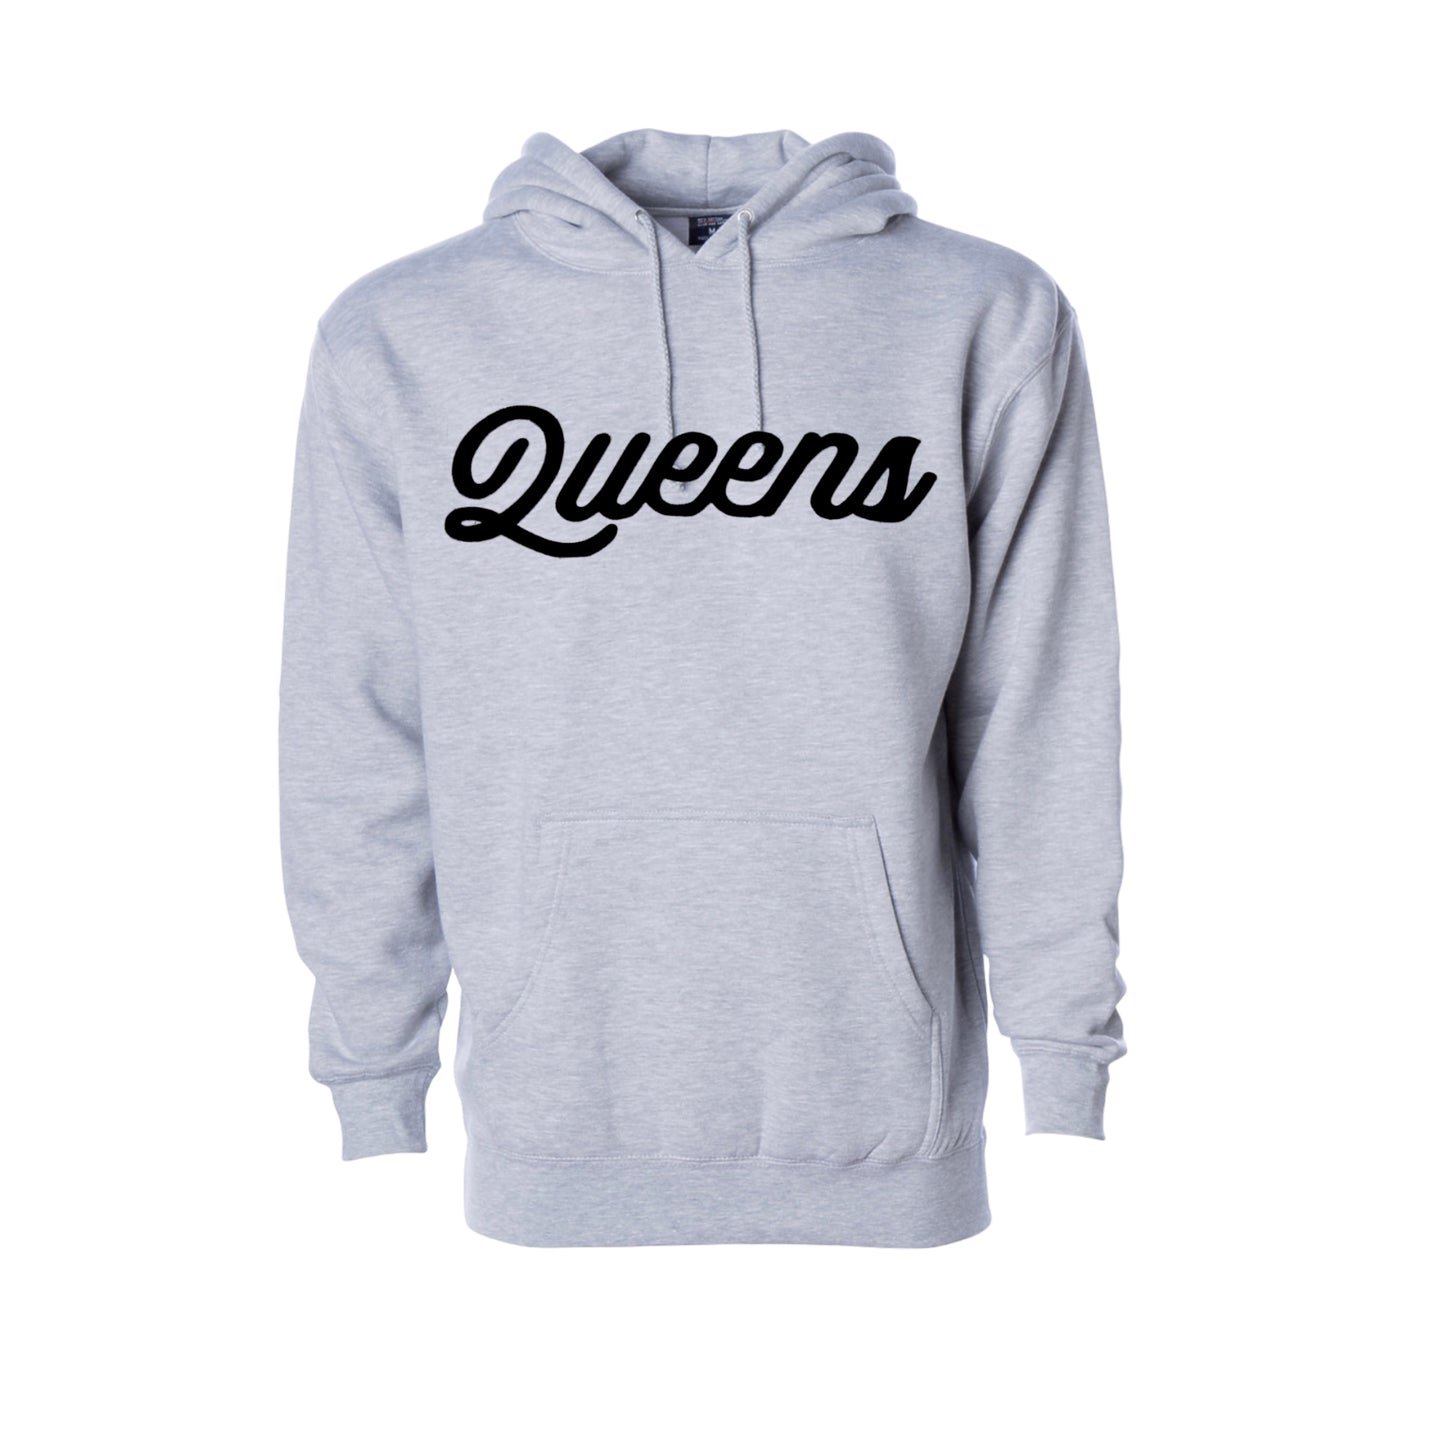 Queens Script Sweater